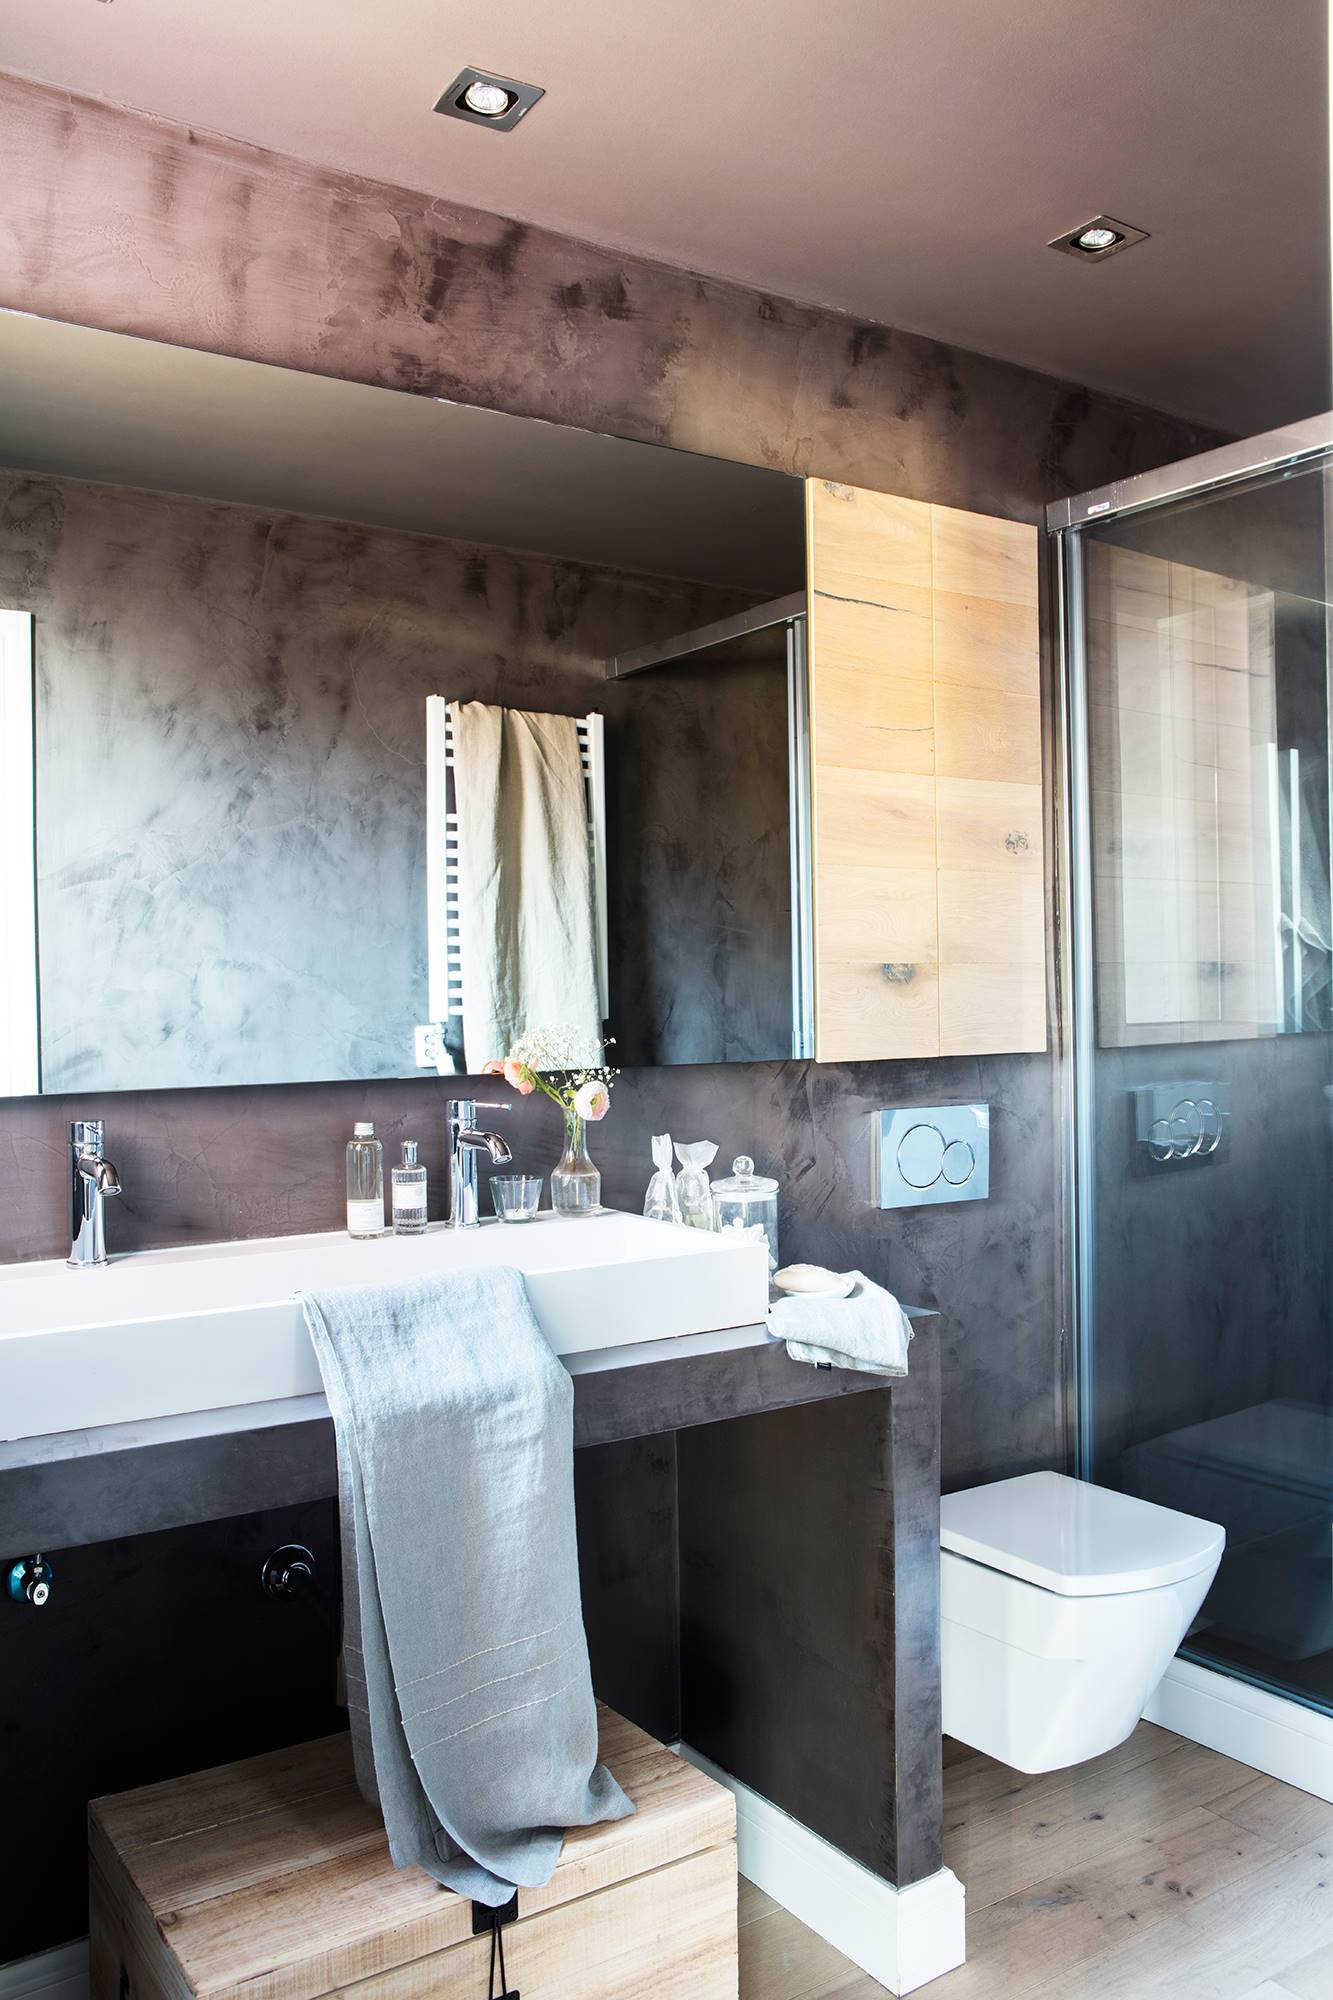 Baño con pared de microcemento gris y armarito de madera sobre el inodoro_ 00451981